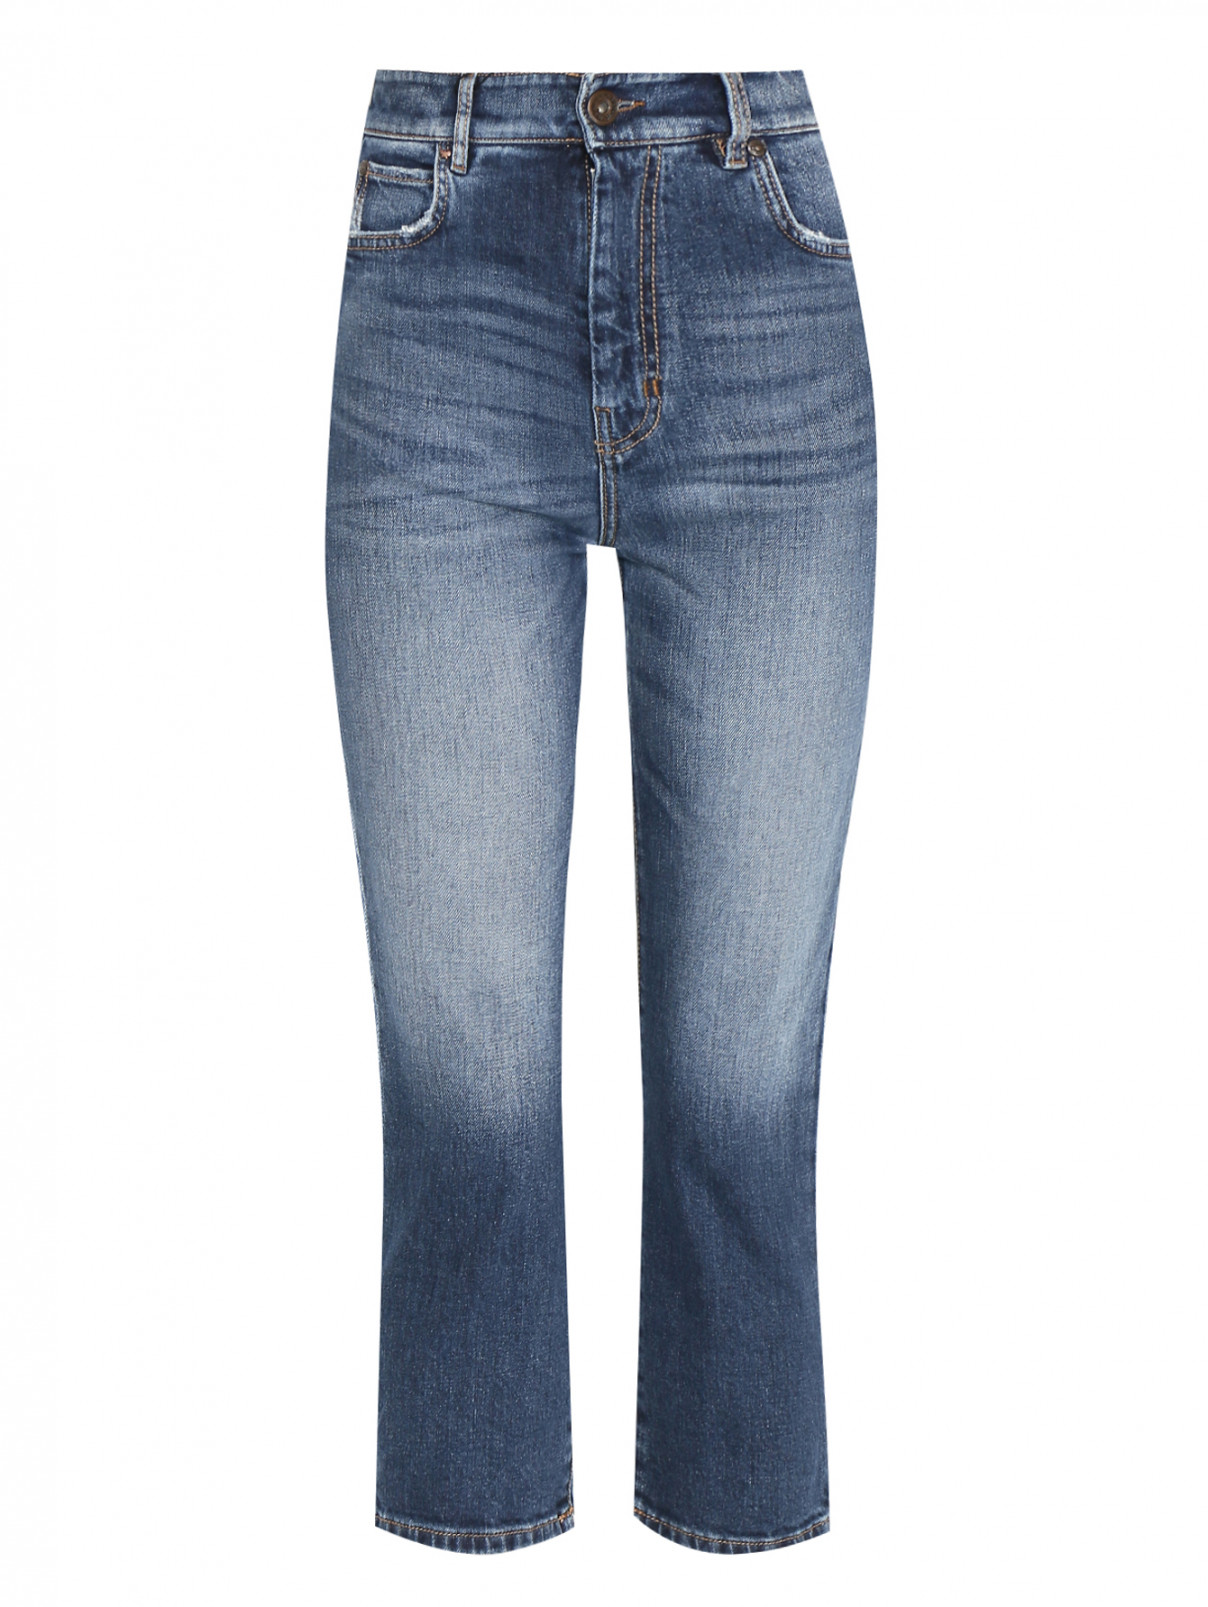 Укороченные джинсы из хлопка с высокой посадкой Weekend Max Mara  –  Общий вид  – Цвет:  Синий